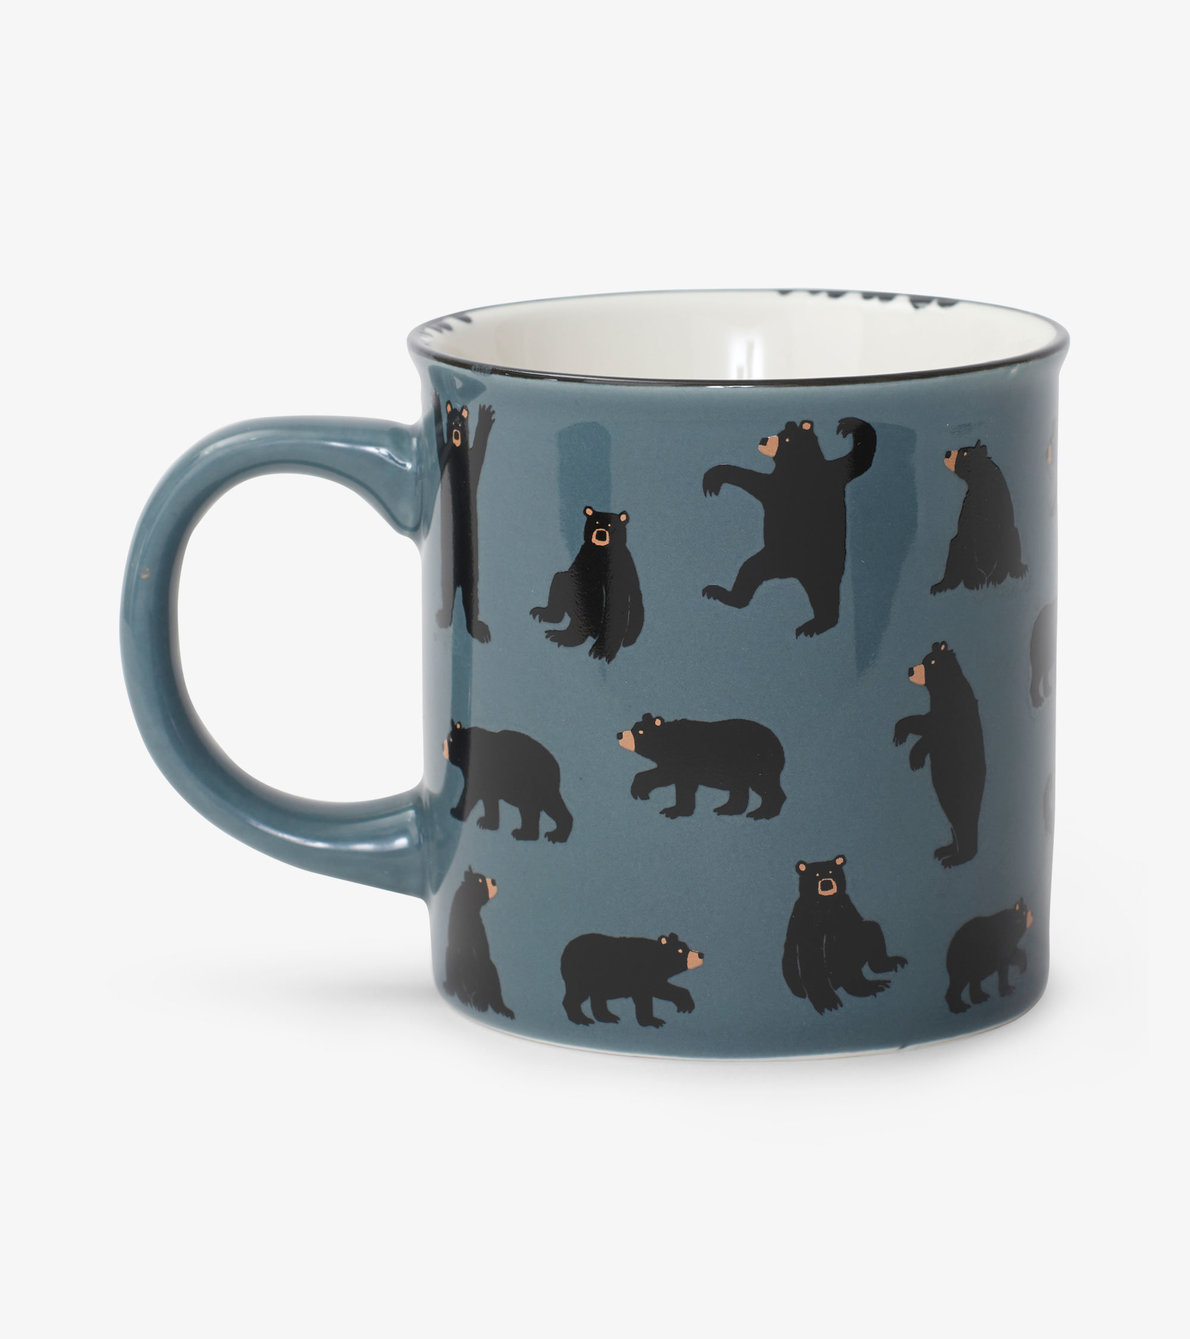 Agrandir l'image de Tasse en céramique de type camping – Ours noirs sur gris anthracite